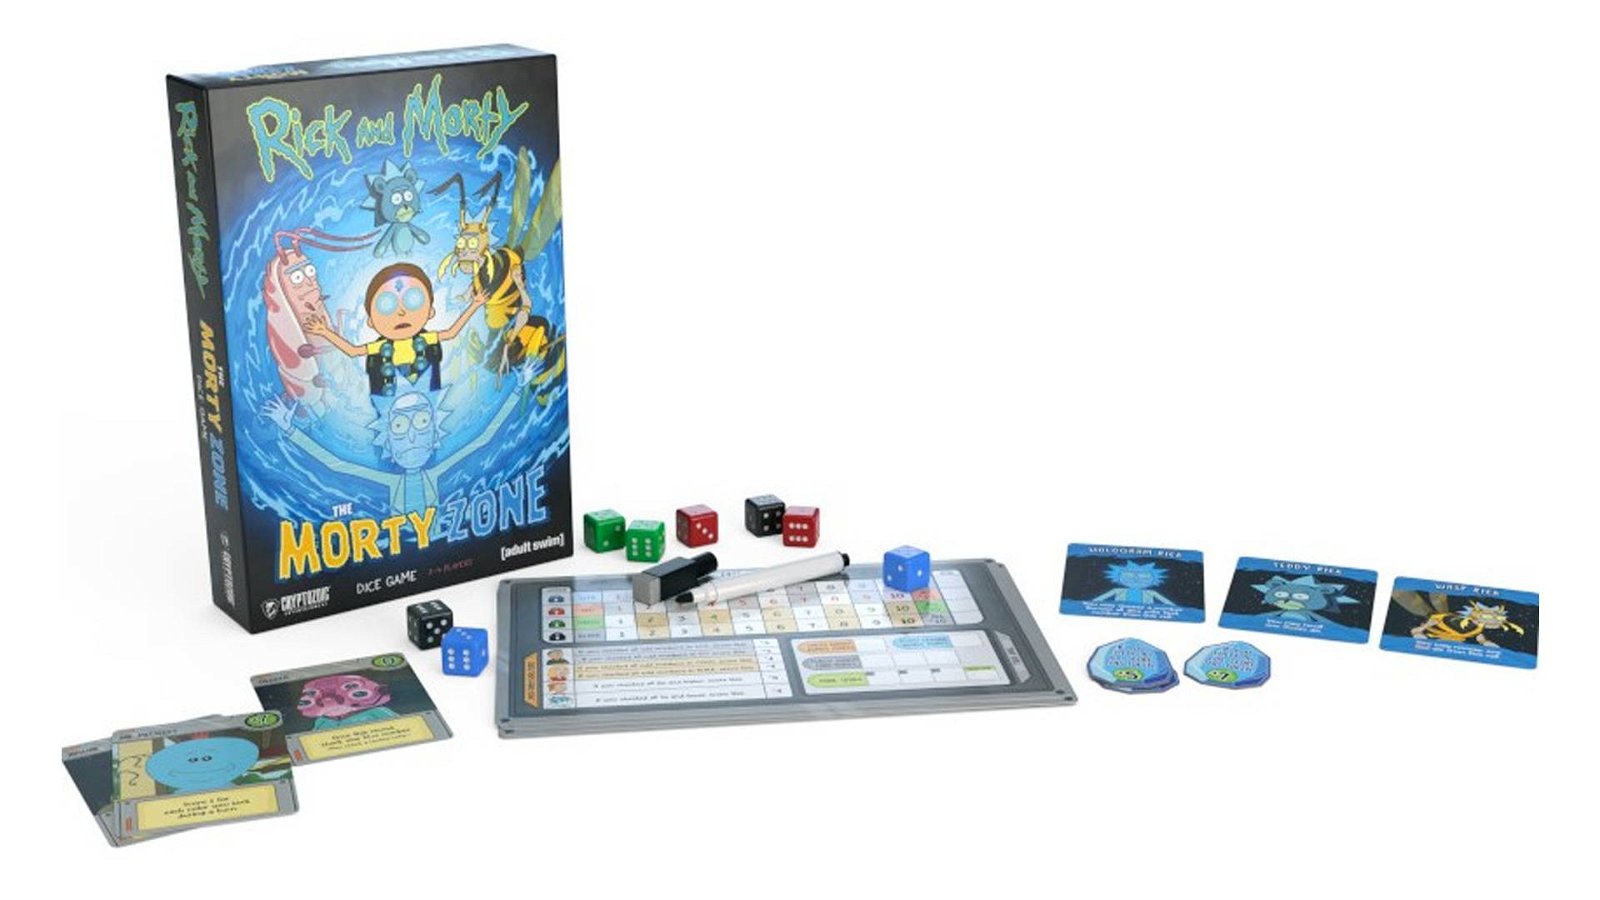 Immagine di Rick and Morty: The Morty Zone Dice Game arriva il nuovo gioco da tavolo di Rick e Morty